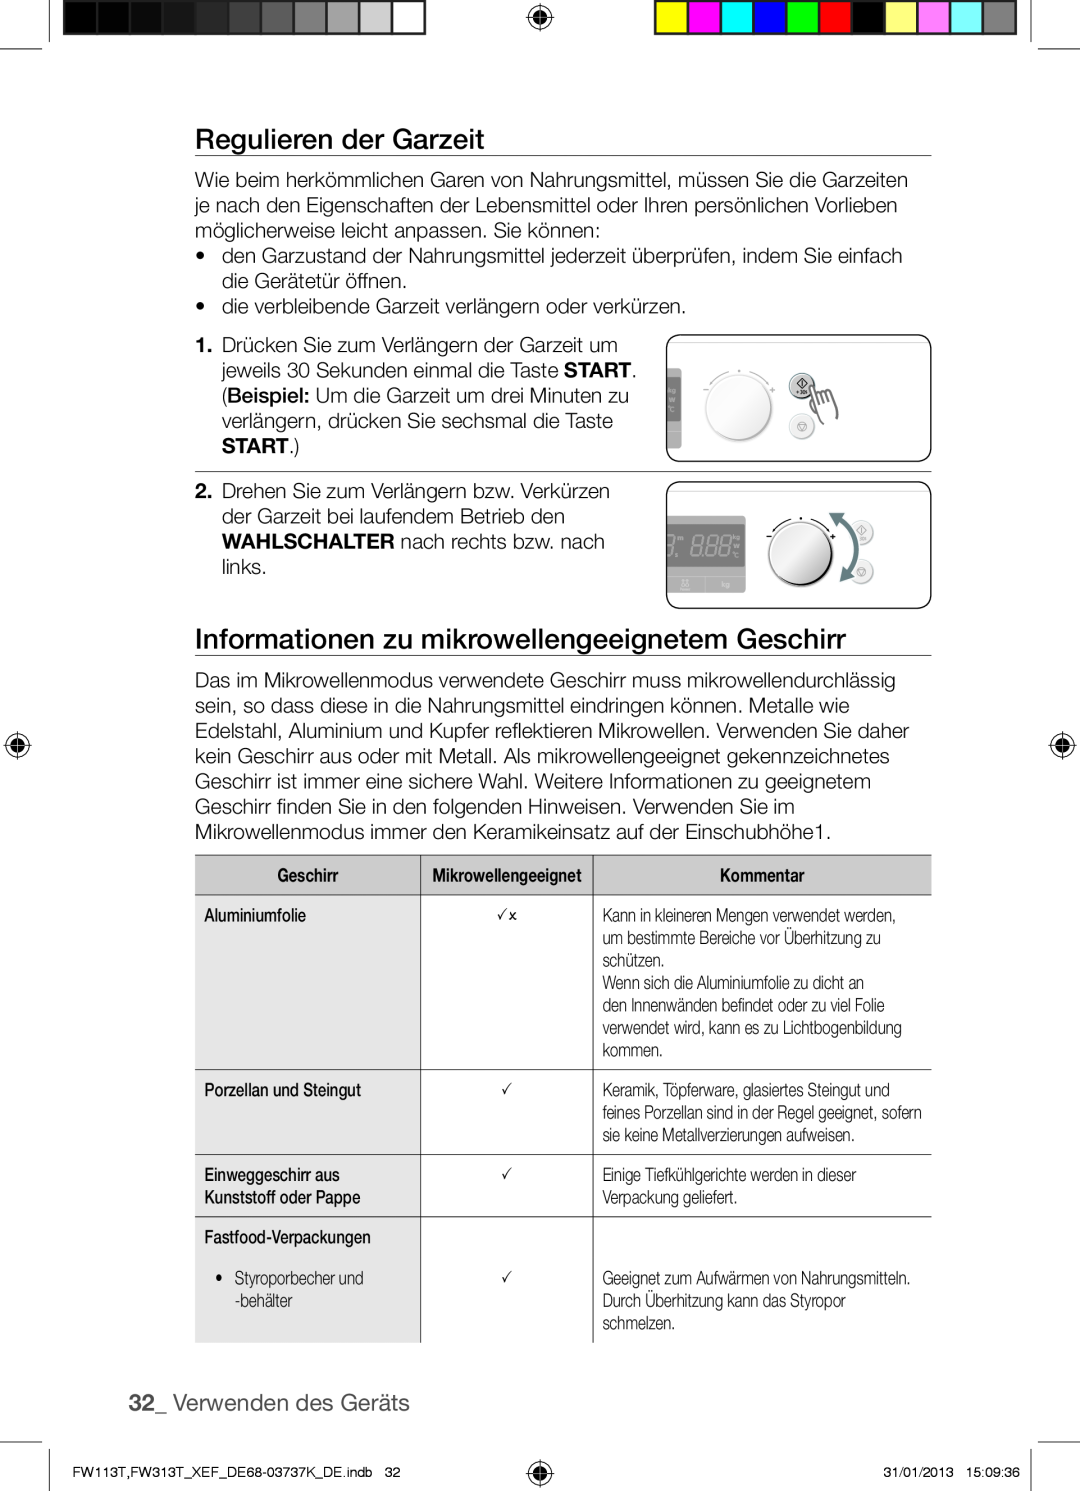 Samsung FW113T002/XEF manual Regulieren der Garzeit, Informationen zu mikrowellengeeignetem Geschirr, Verwenden des Geräts 